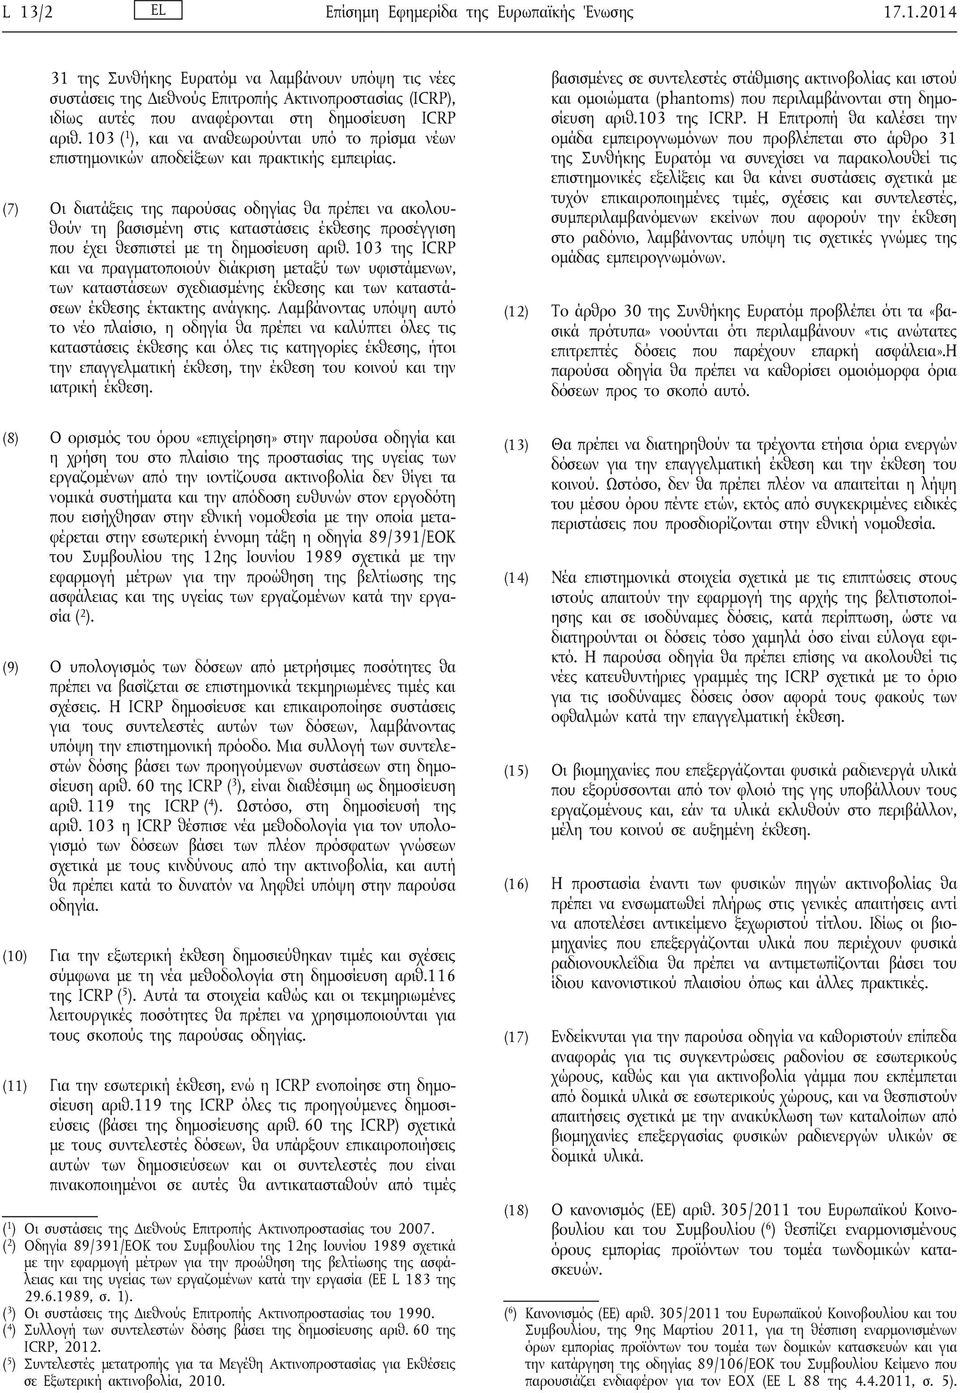 (7) Οι διατάξεις της παρούσας οδηγίας θα πρέπει να ακολουθούν τη βασισμένη στις καταστάσεις έκθεσης προσέγγιση που έχει θεσπιστεί με τη δημοσίευση αριθ.